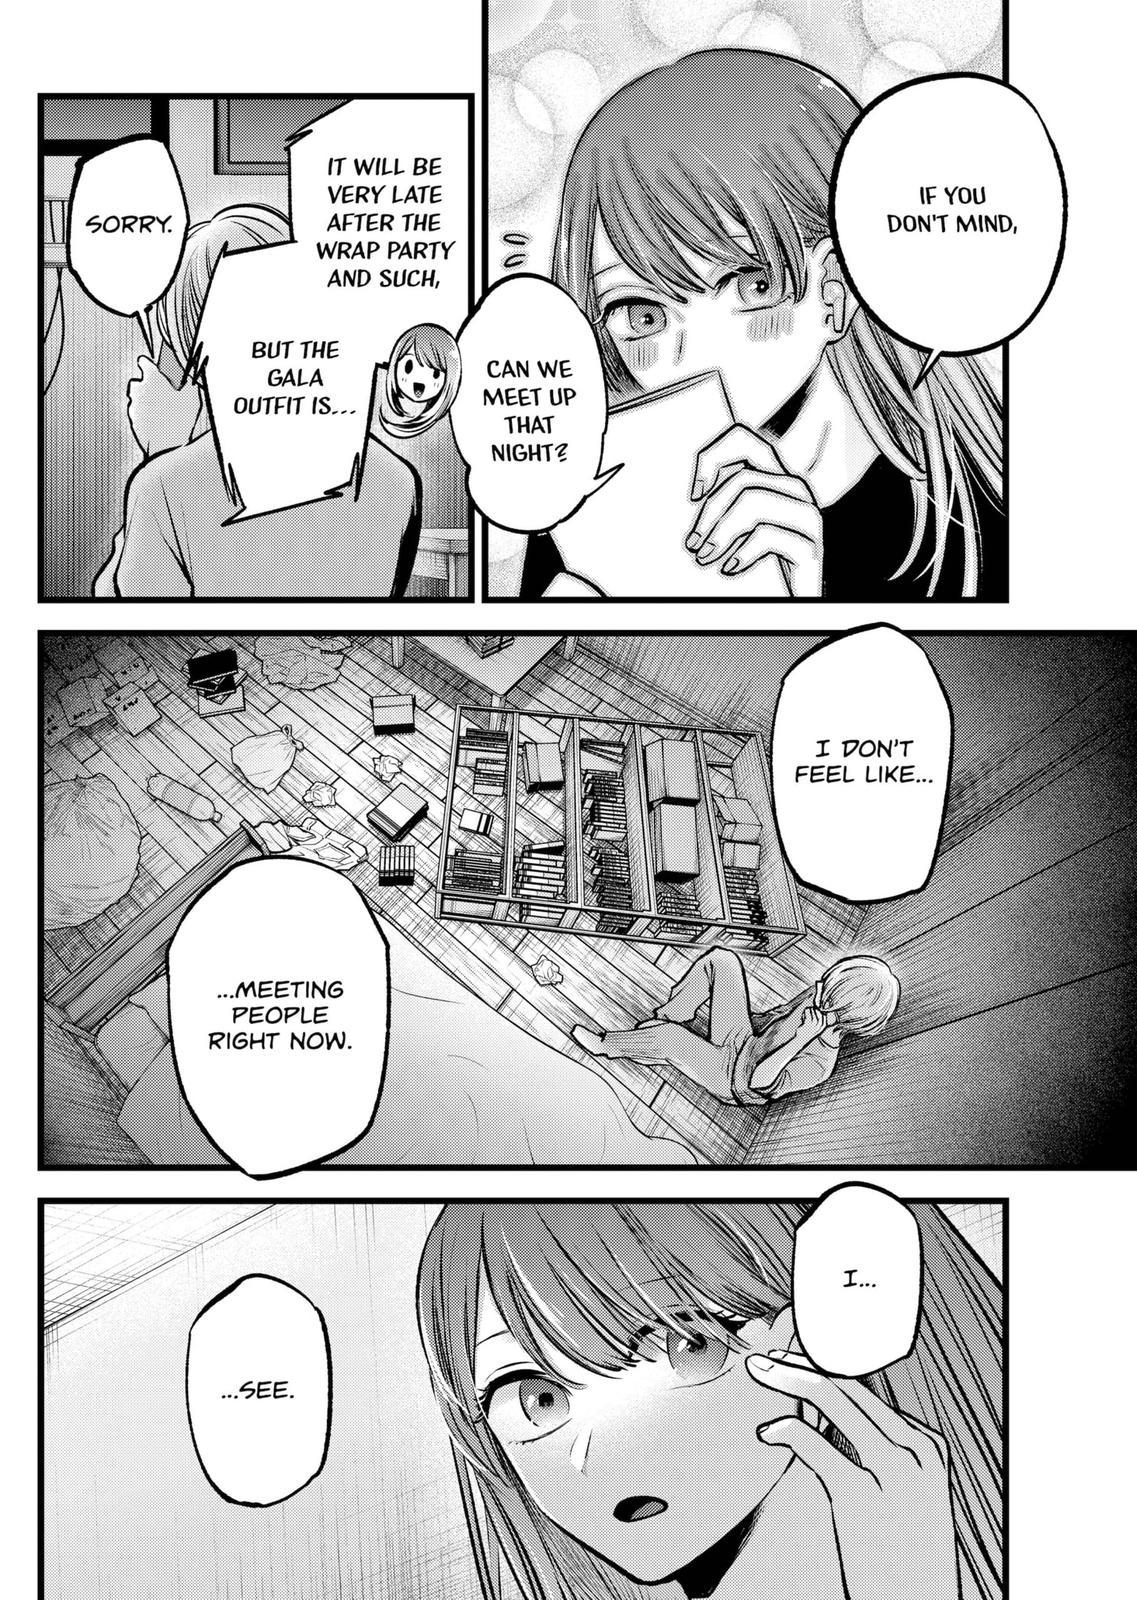 Oshi no ko, Chapter 129 - Oshi no ko Manga Online